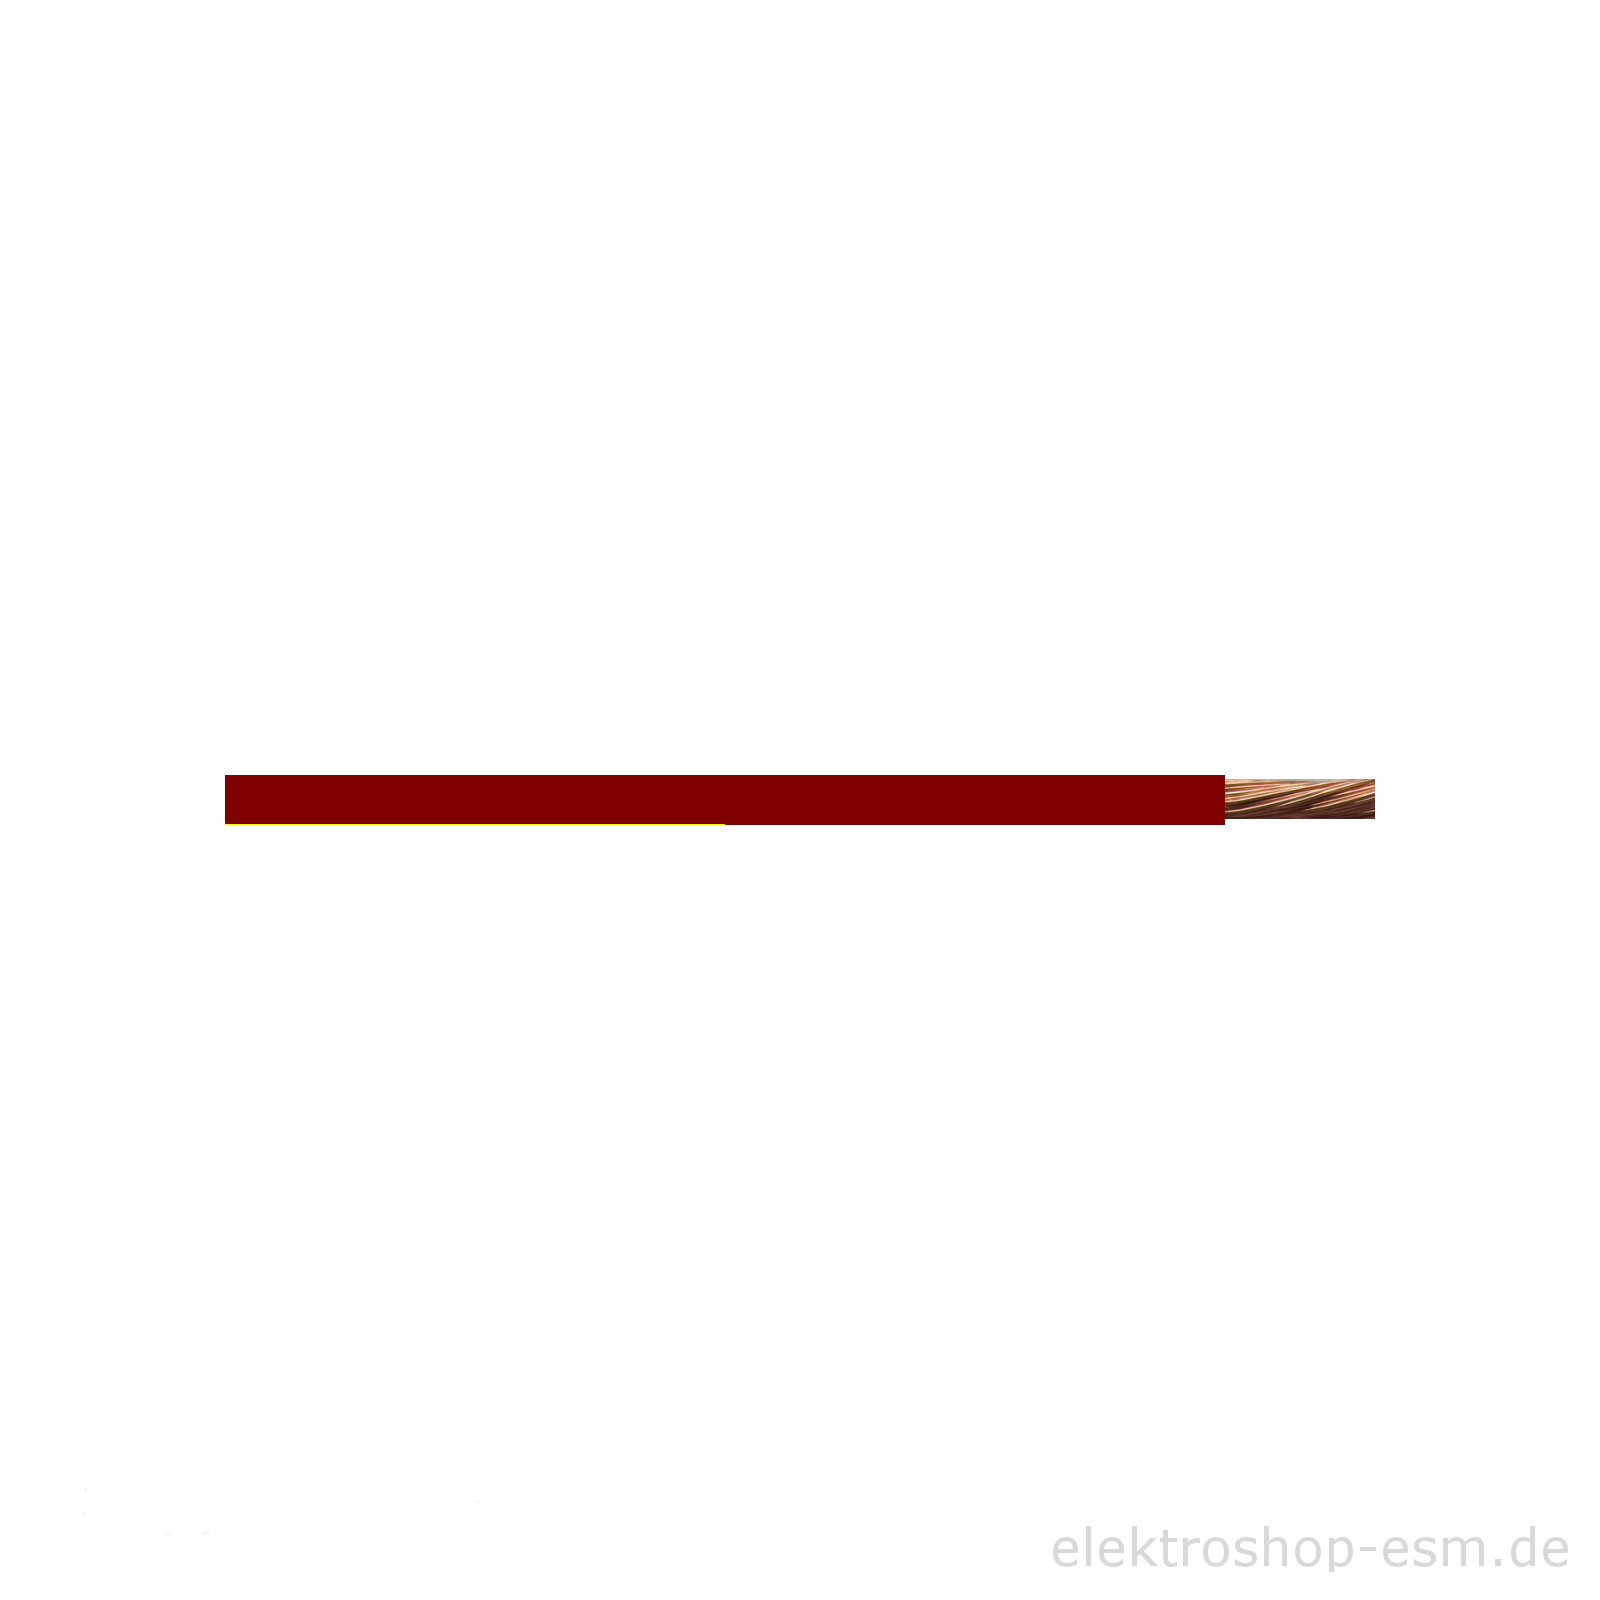 6mm² Kfz Kabel Litze Flry Rot € 1,85/m w. Längen siehe Beschreibung 5m 